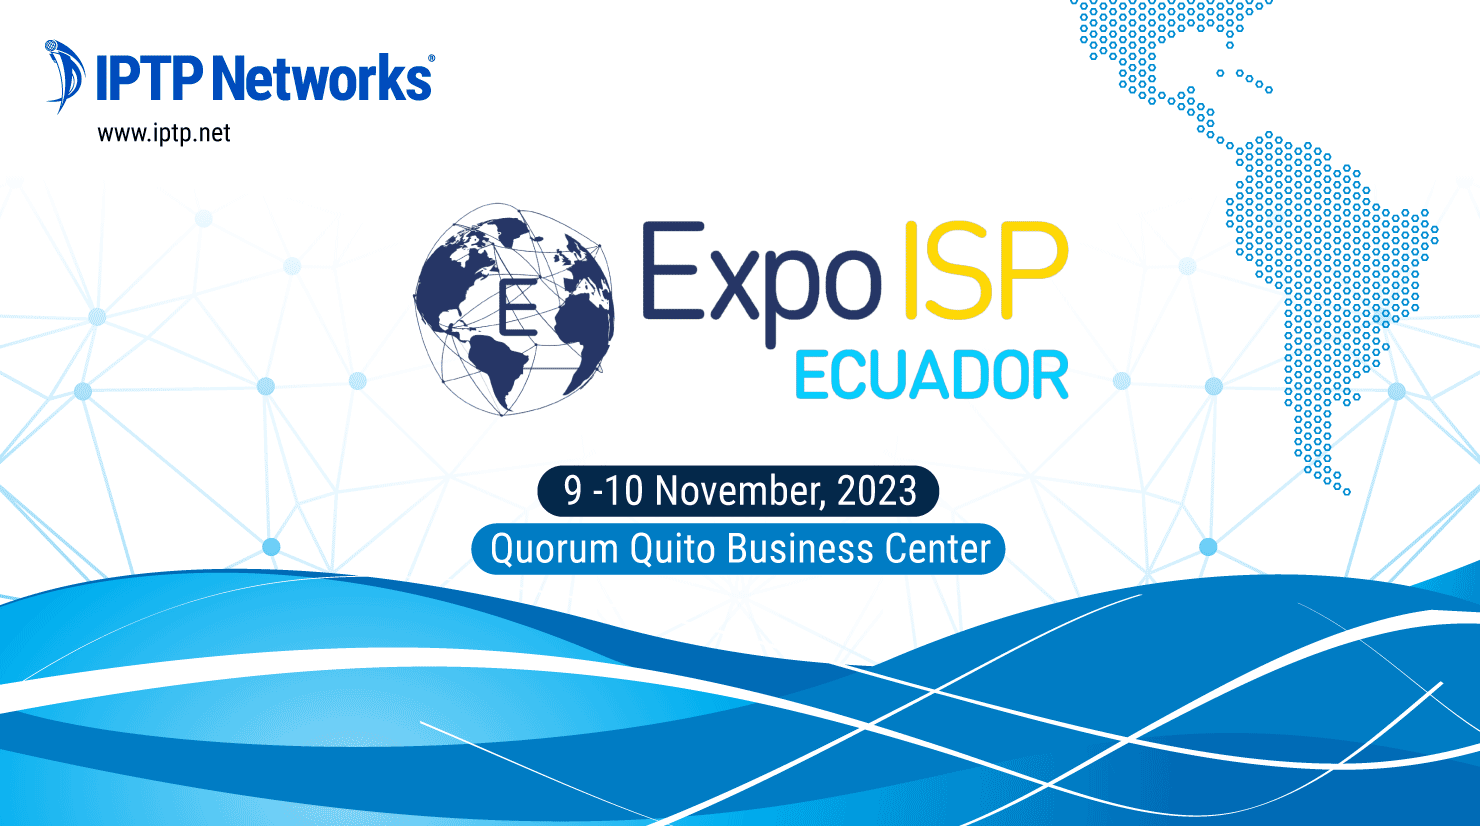 ExpoISP Ecuador 2023